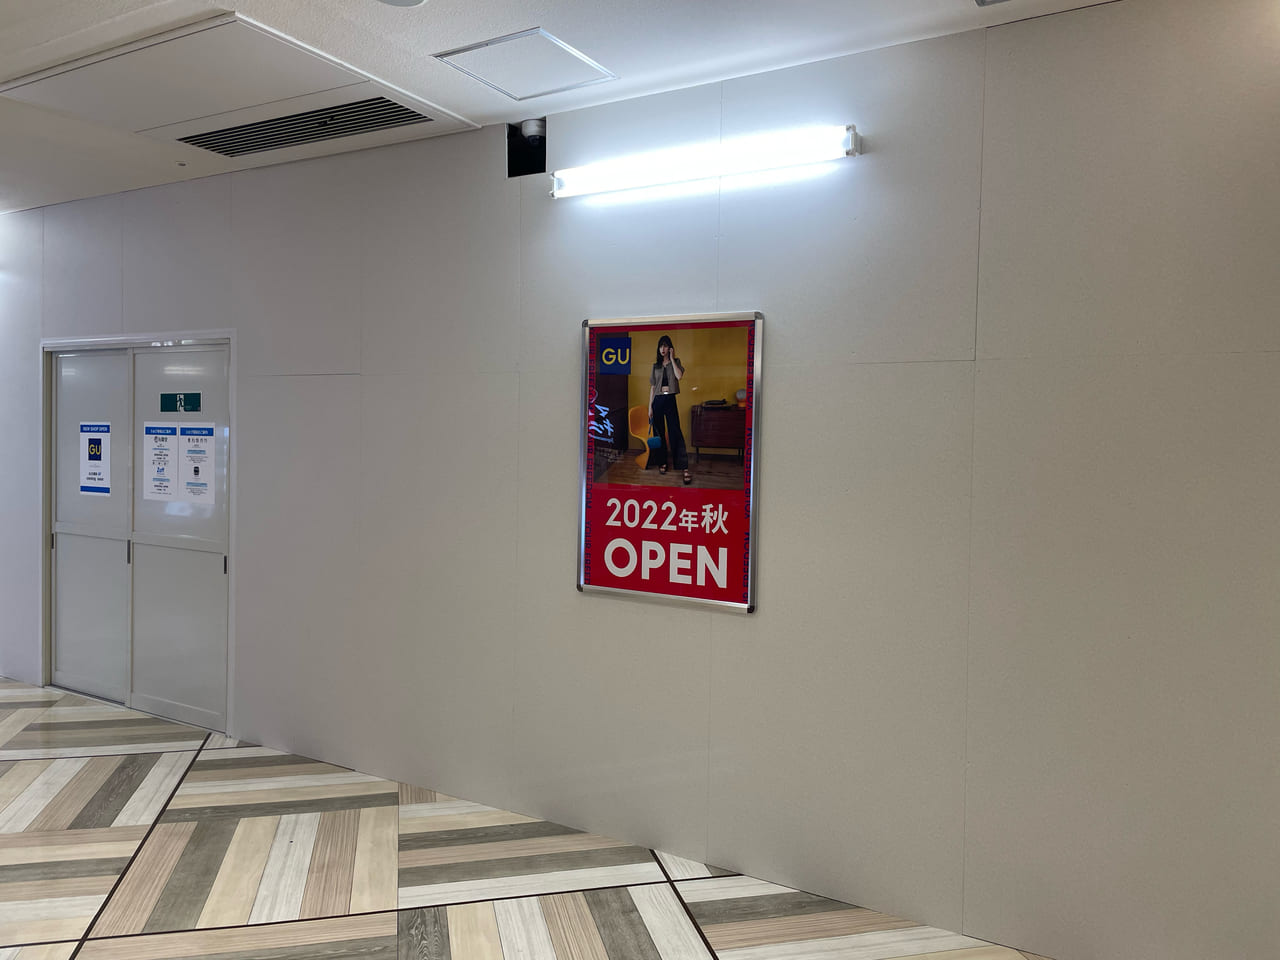 横浜市西区 Guルミネ横浜店 が22年秋にオープンします 号外net 横浜市中区 西区